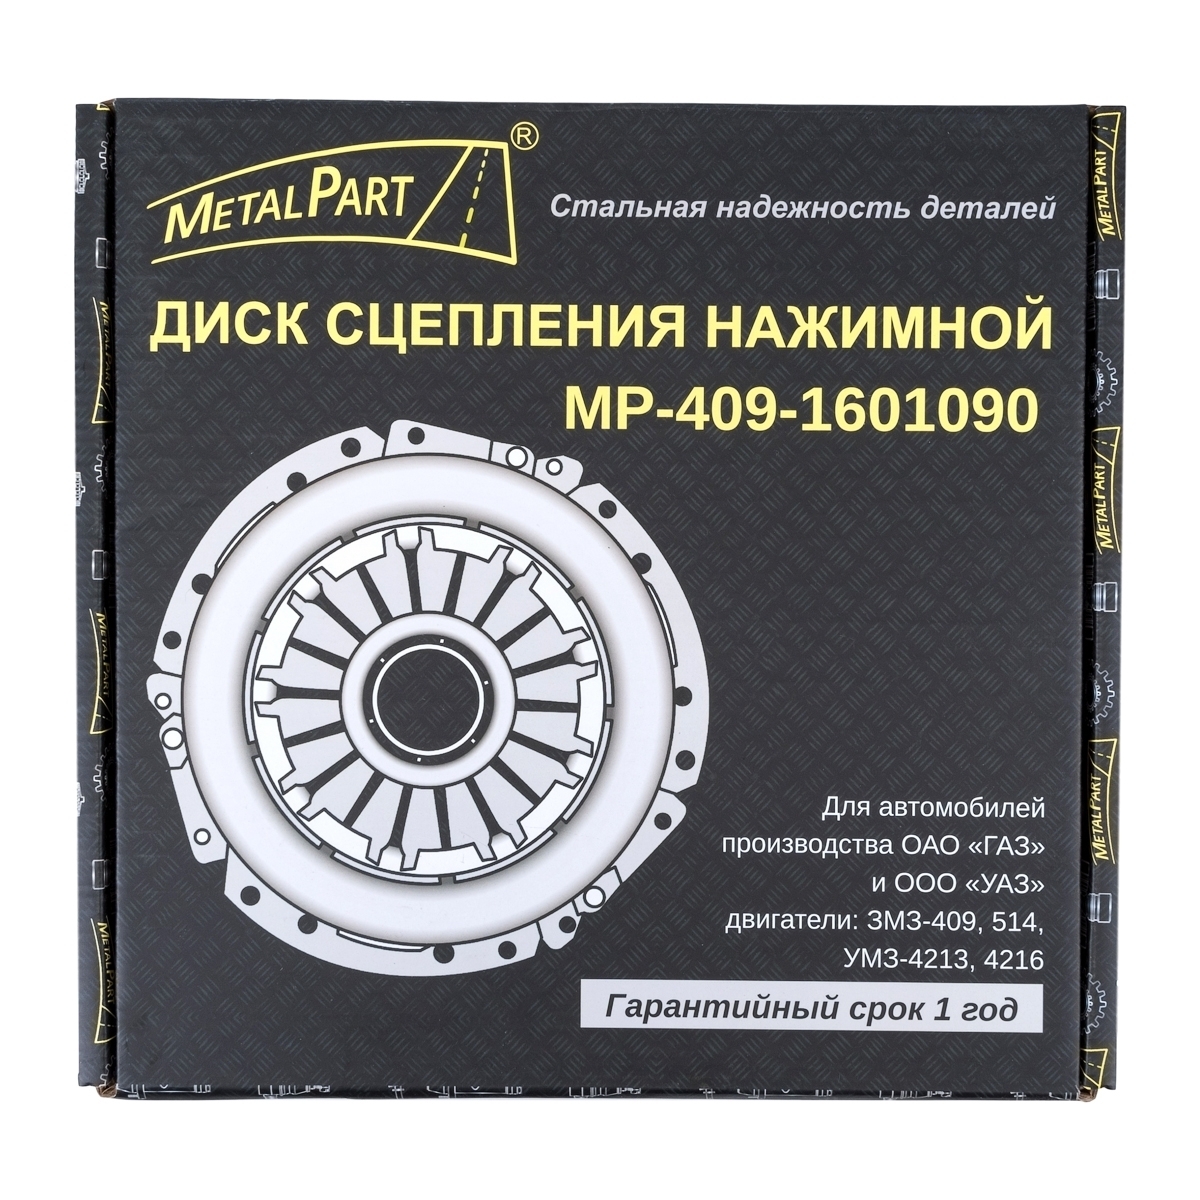 Диск сцепления нажимной MetalPart для автомобилей ГАЗ, УАЗ с двигателем ЗМЗ-409, 514, УМЗ-4213, 4216